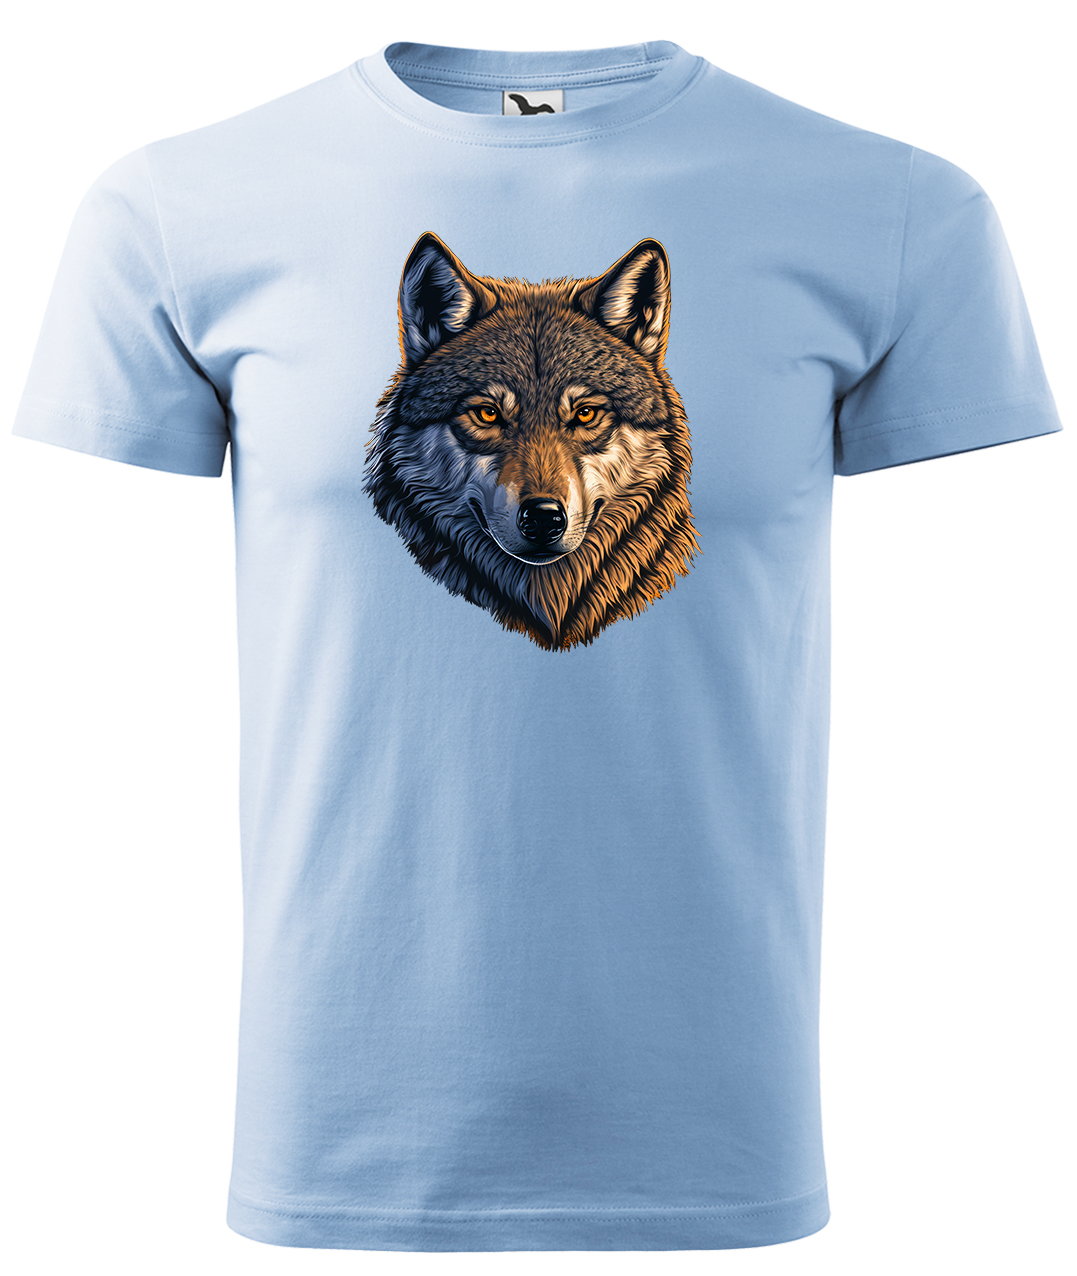 Dětské tričko s vlkem - Hlava vlka Velikost: 4 roky / 110 cm, Barva: Nebesky modrá (15), Délka rukávu: Krátký rukáv